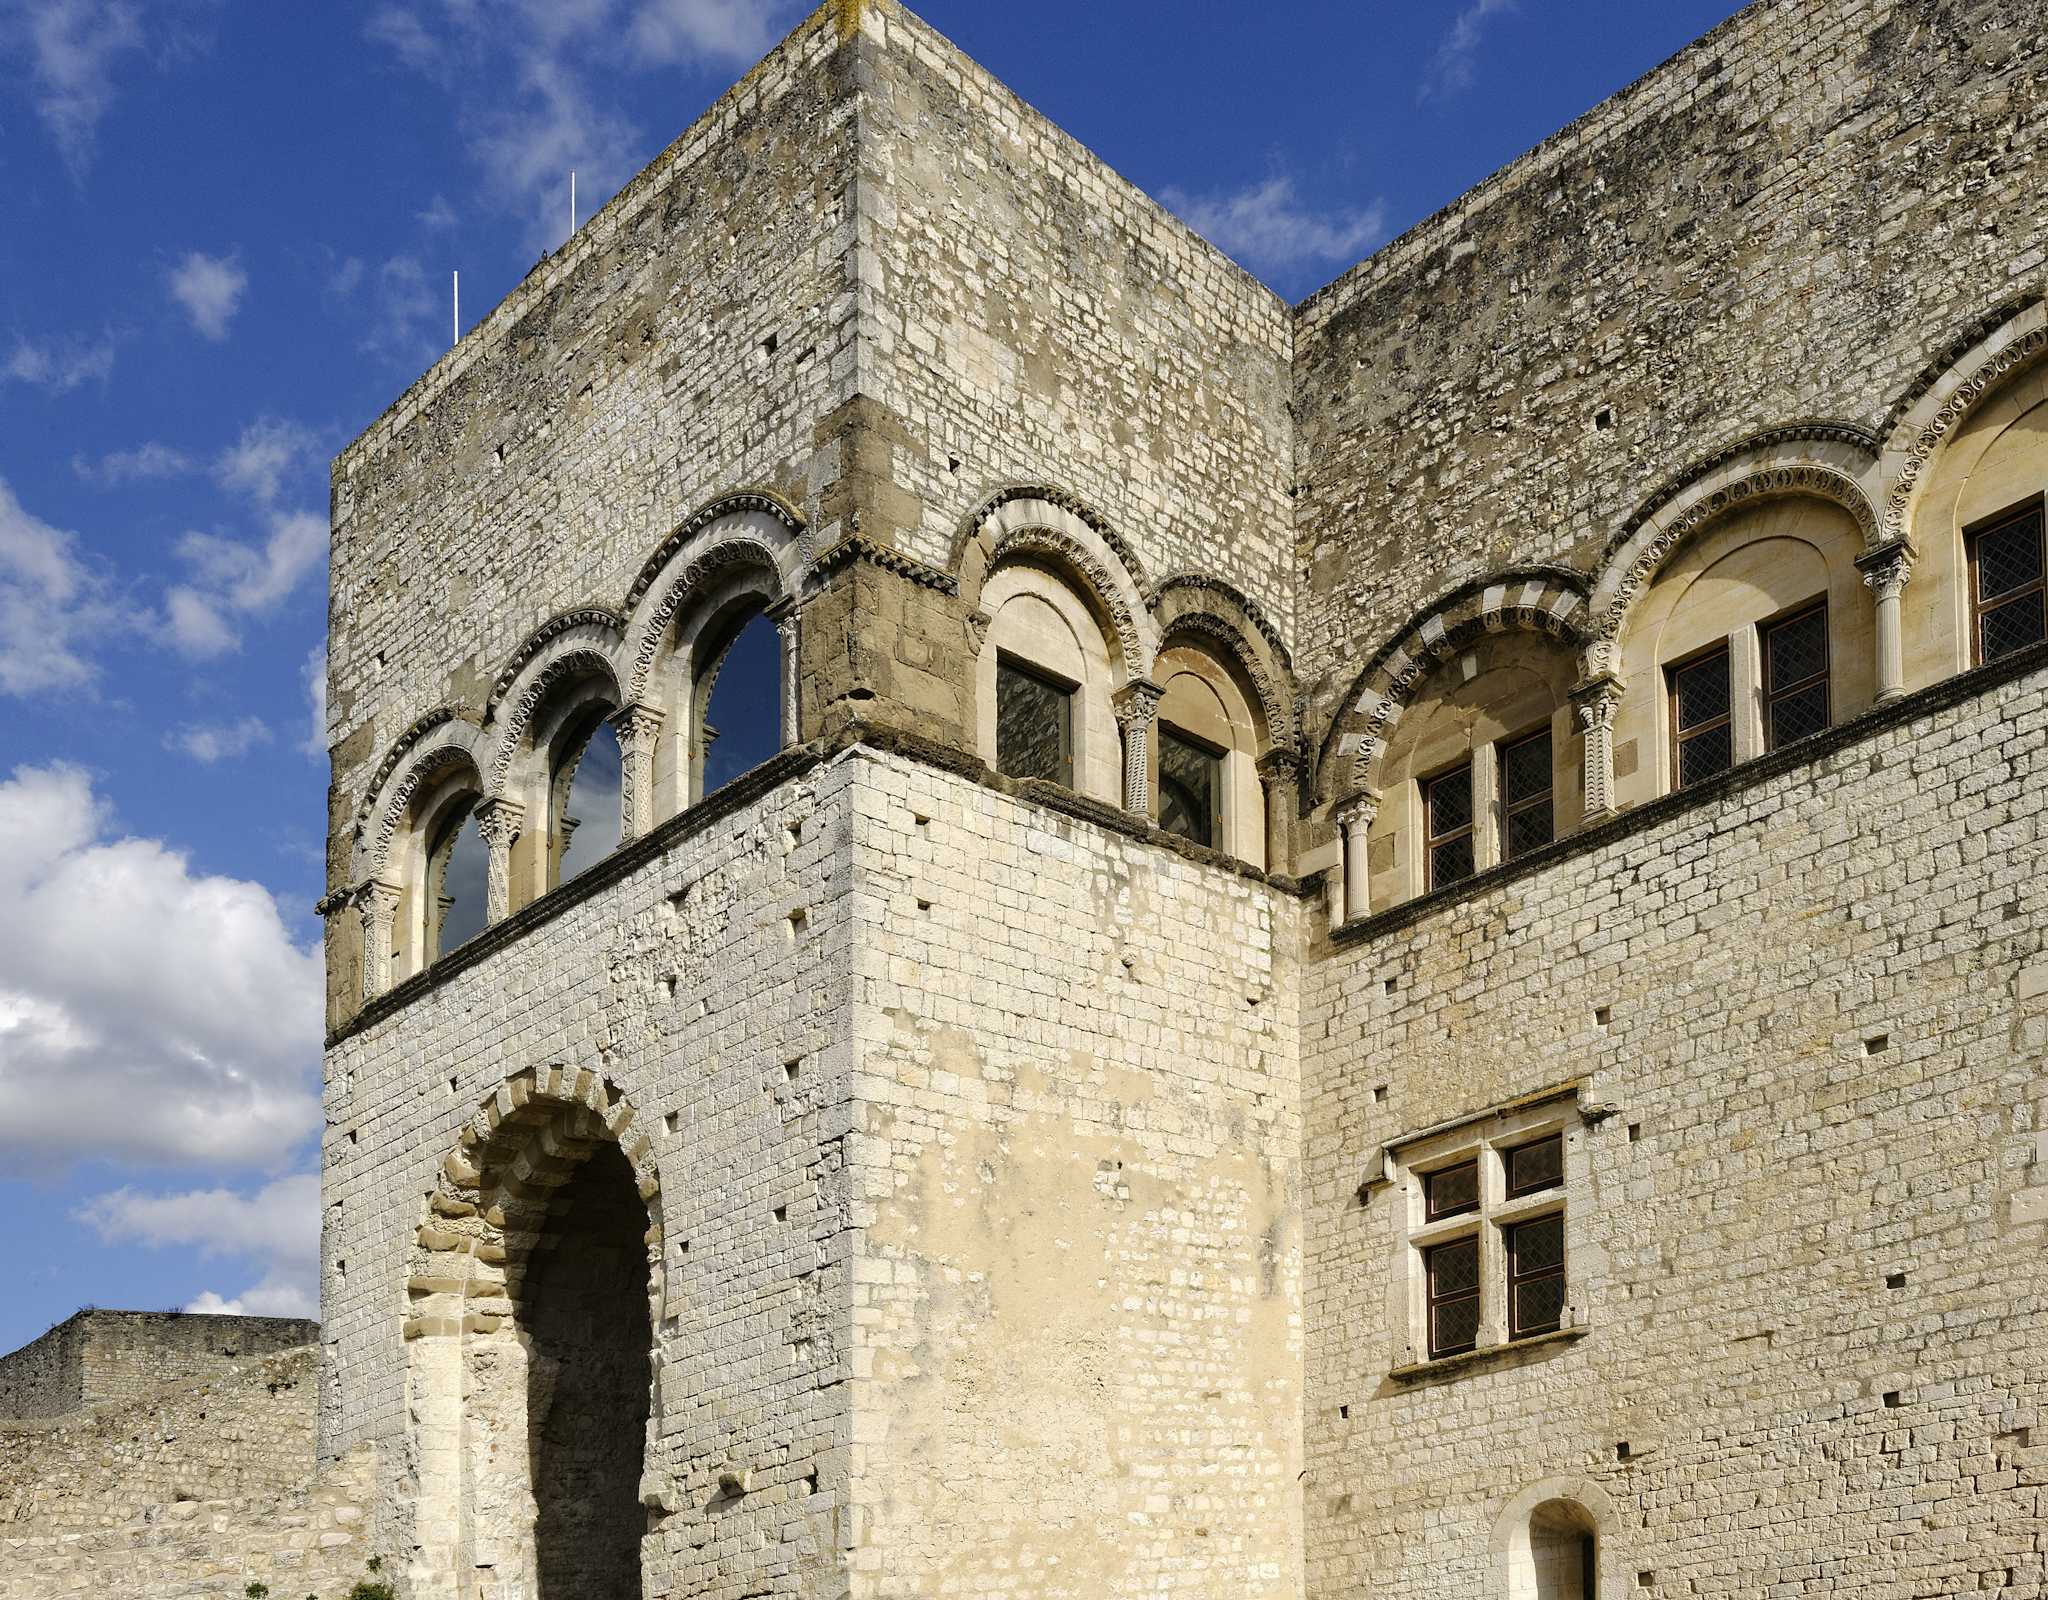 Admehar Castle